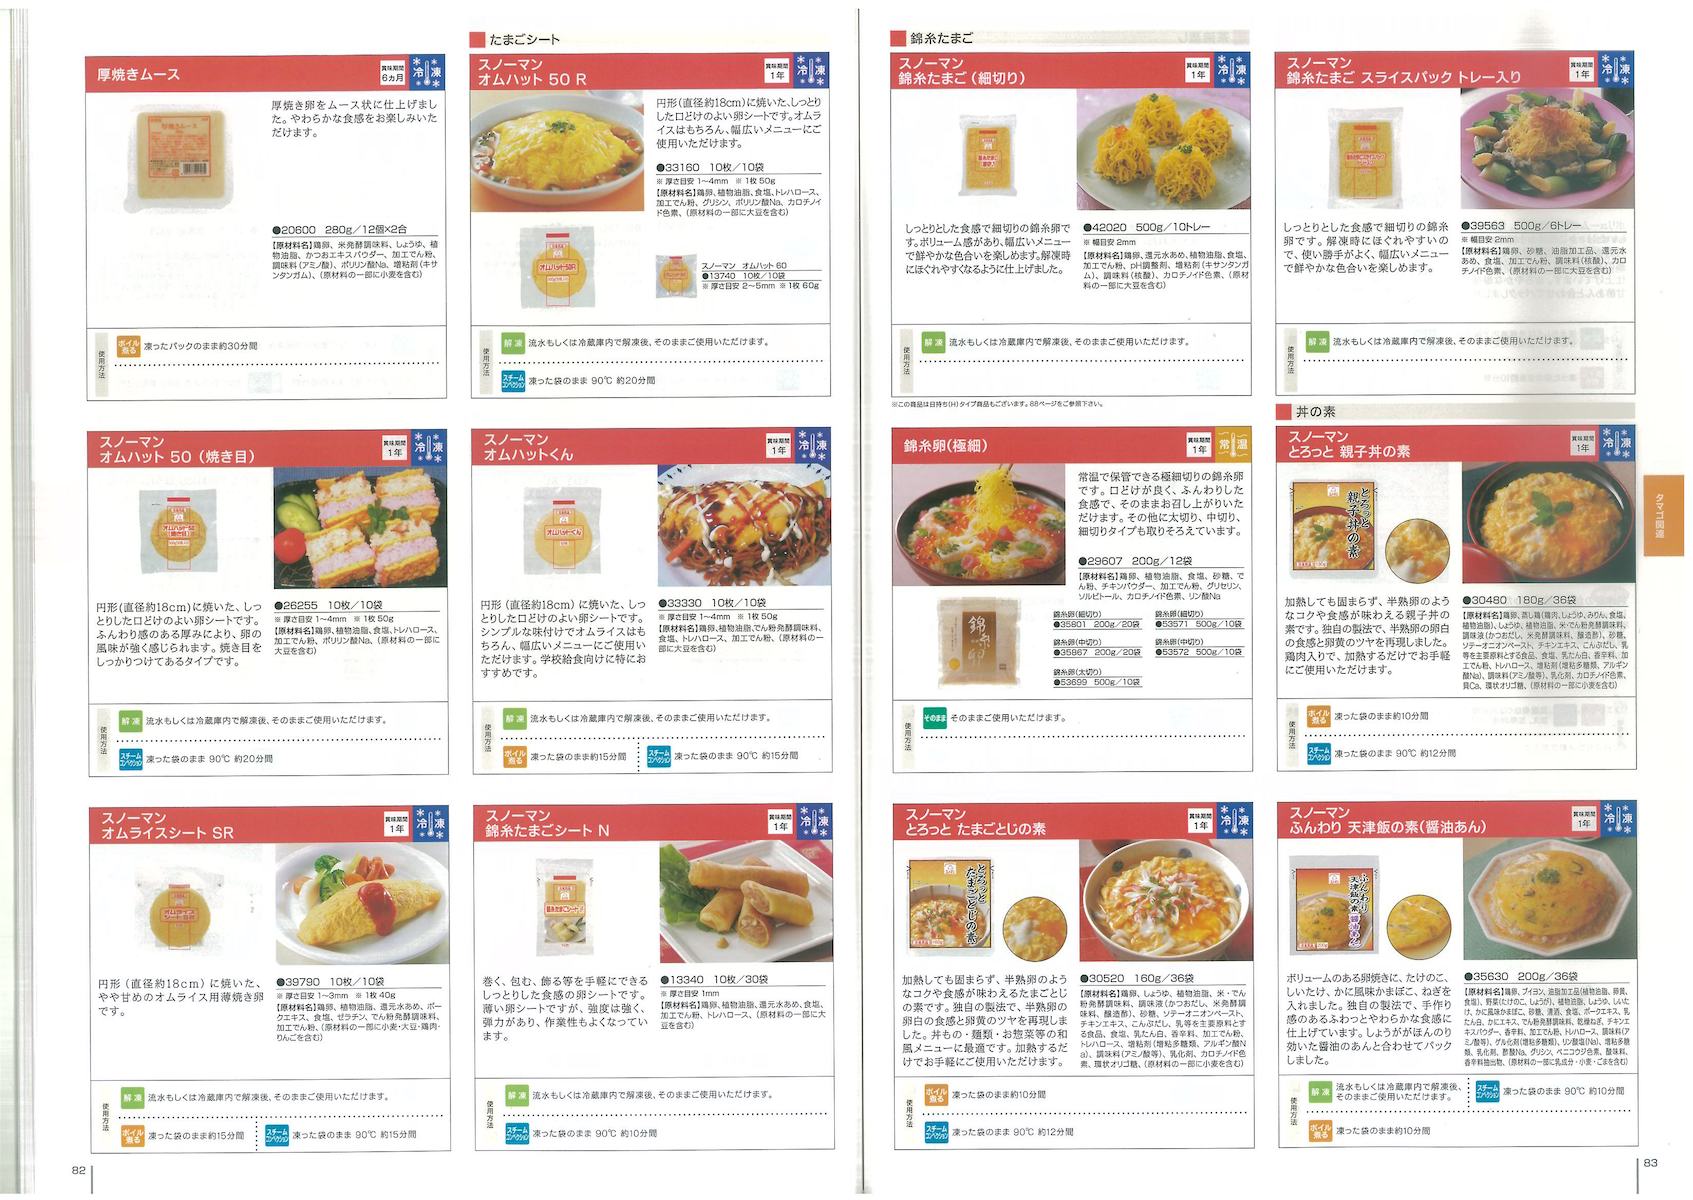 キューピー2015業務用総合カタログ | 冷凍食品カタログ.com